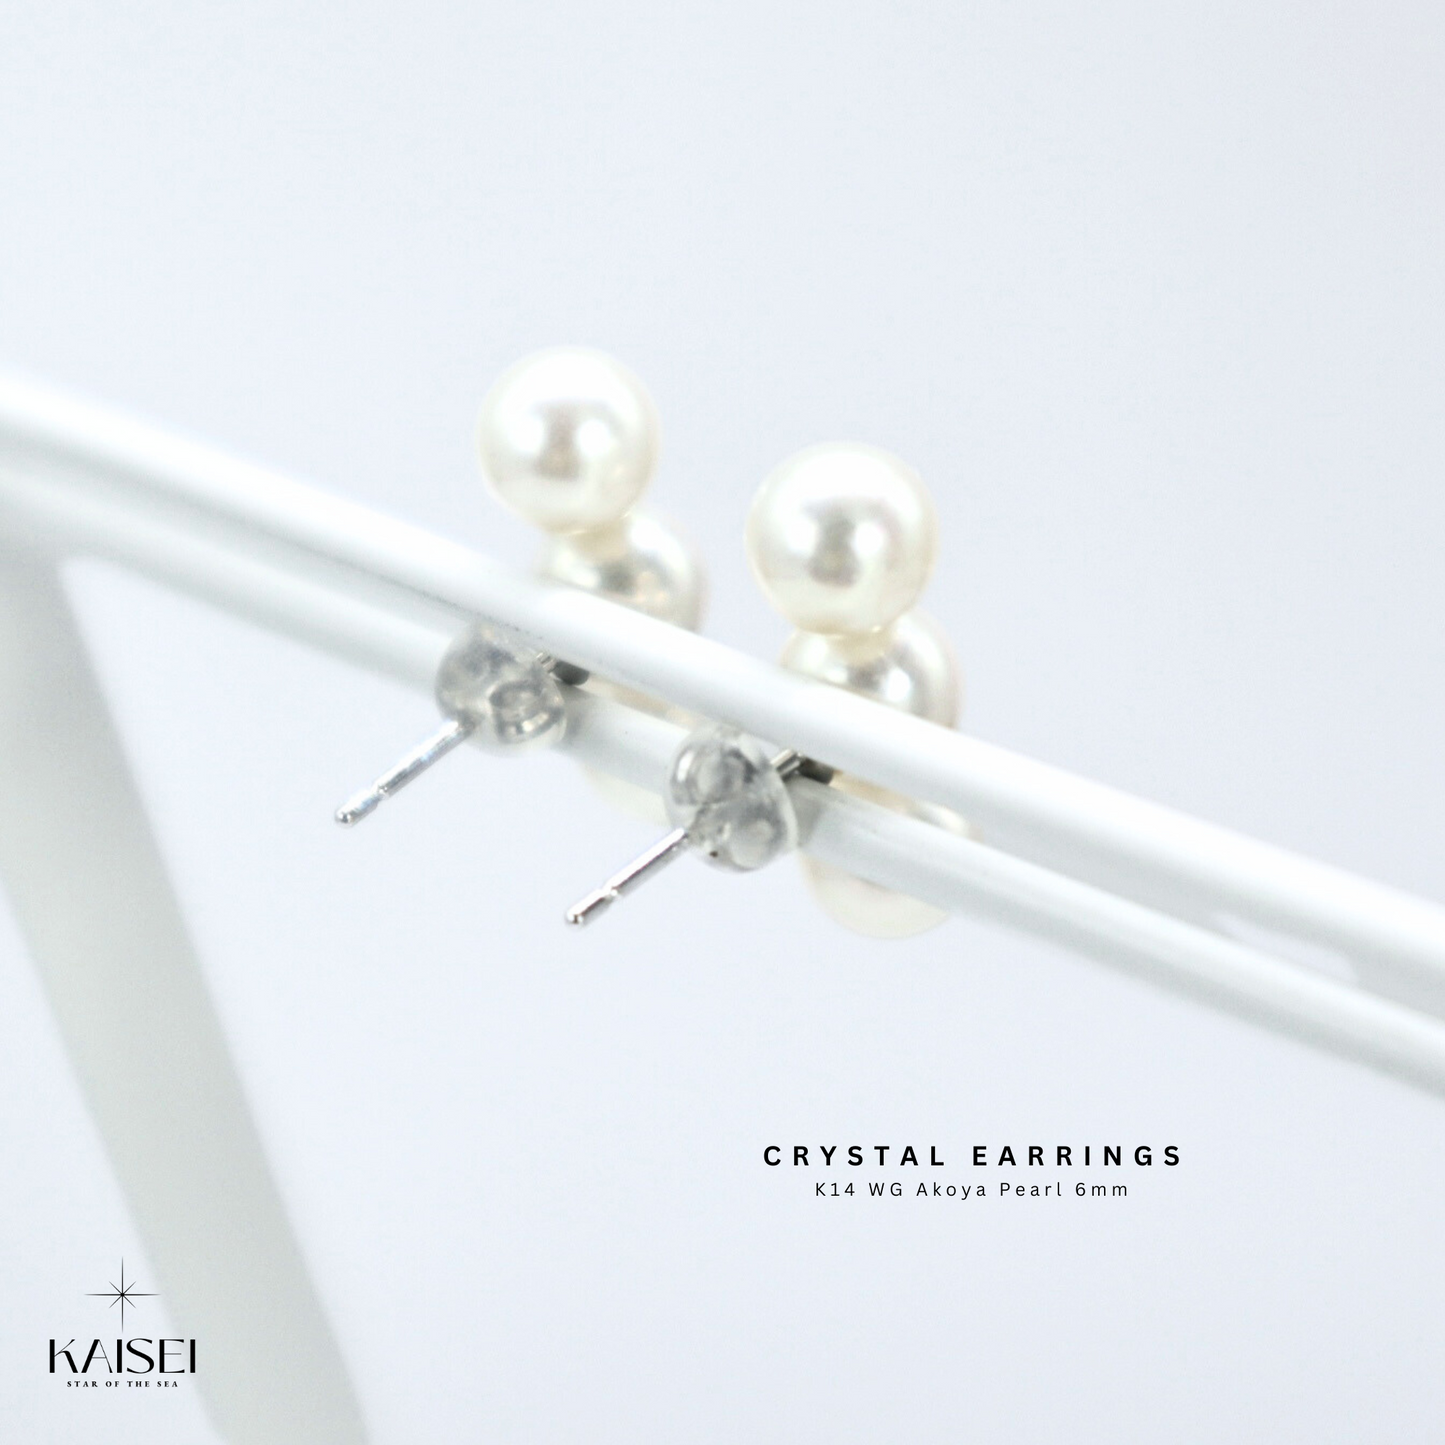 Kaisei Pearl - Crystal Earrings K14 WG Akoya Pearl 6mm Japanese Luxury Jewelry